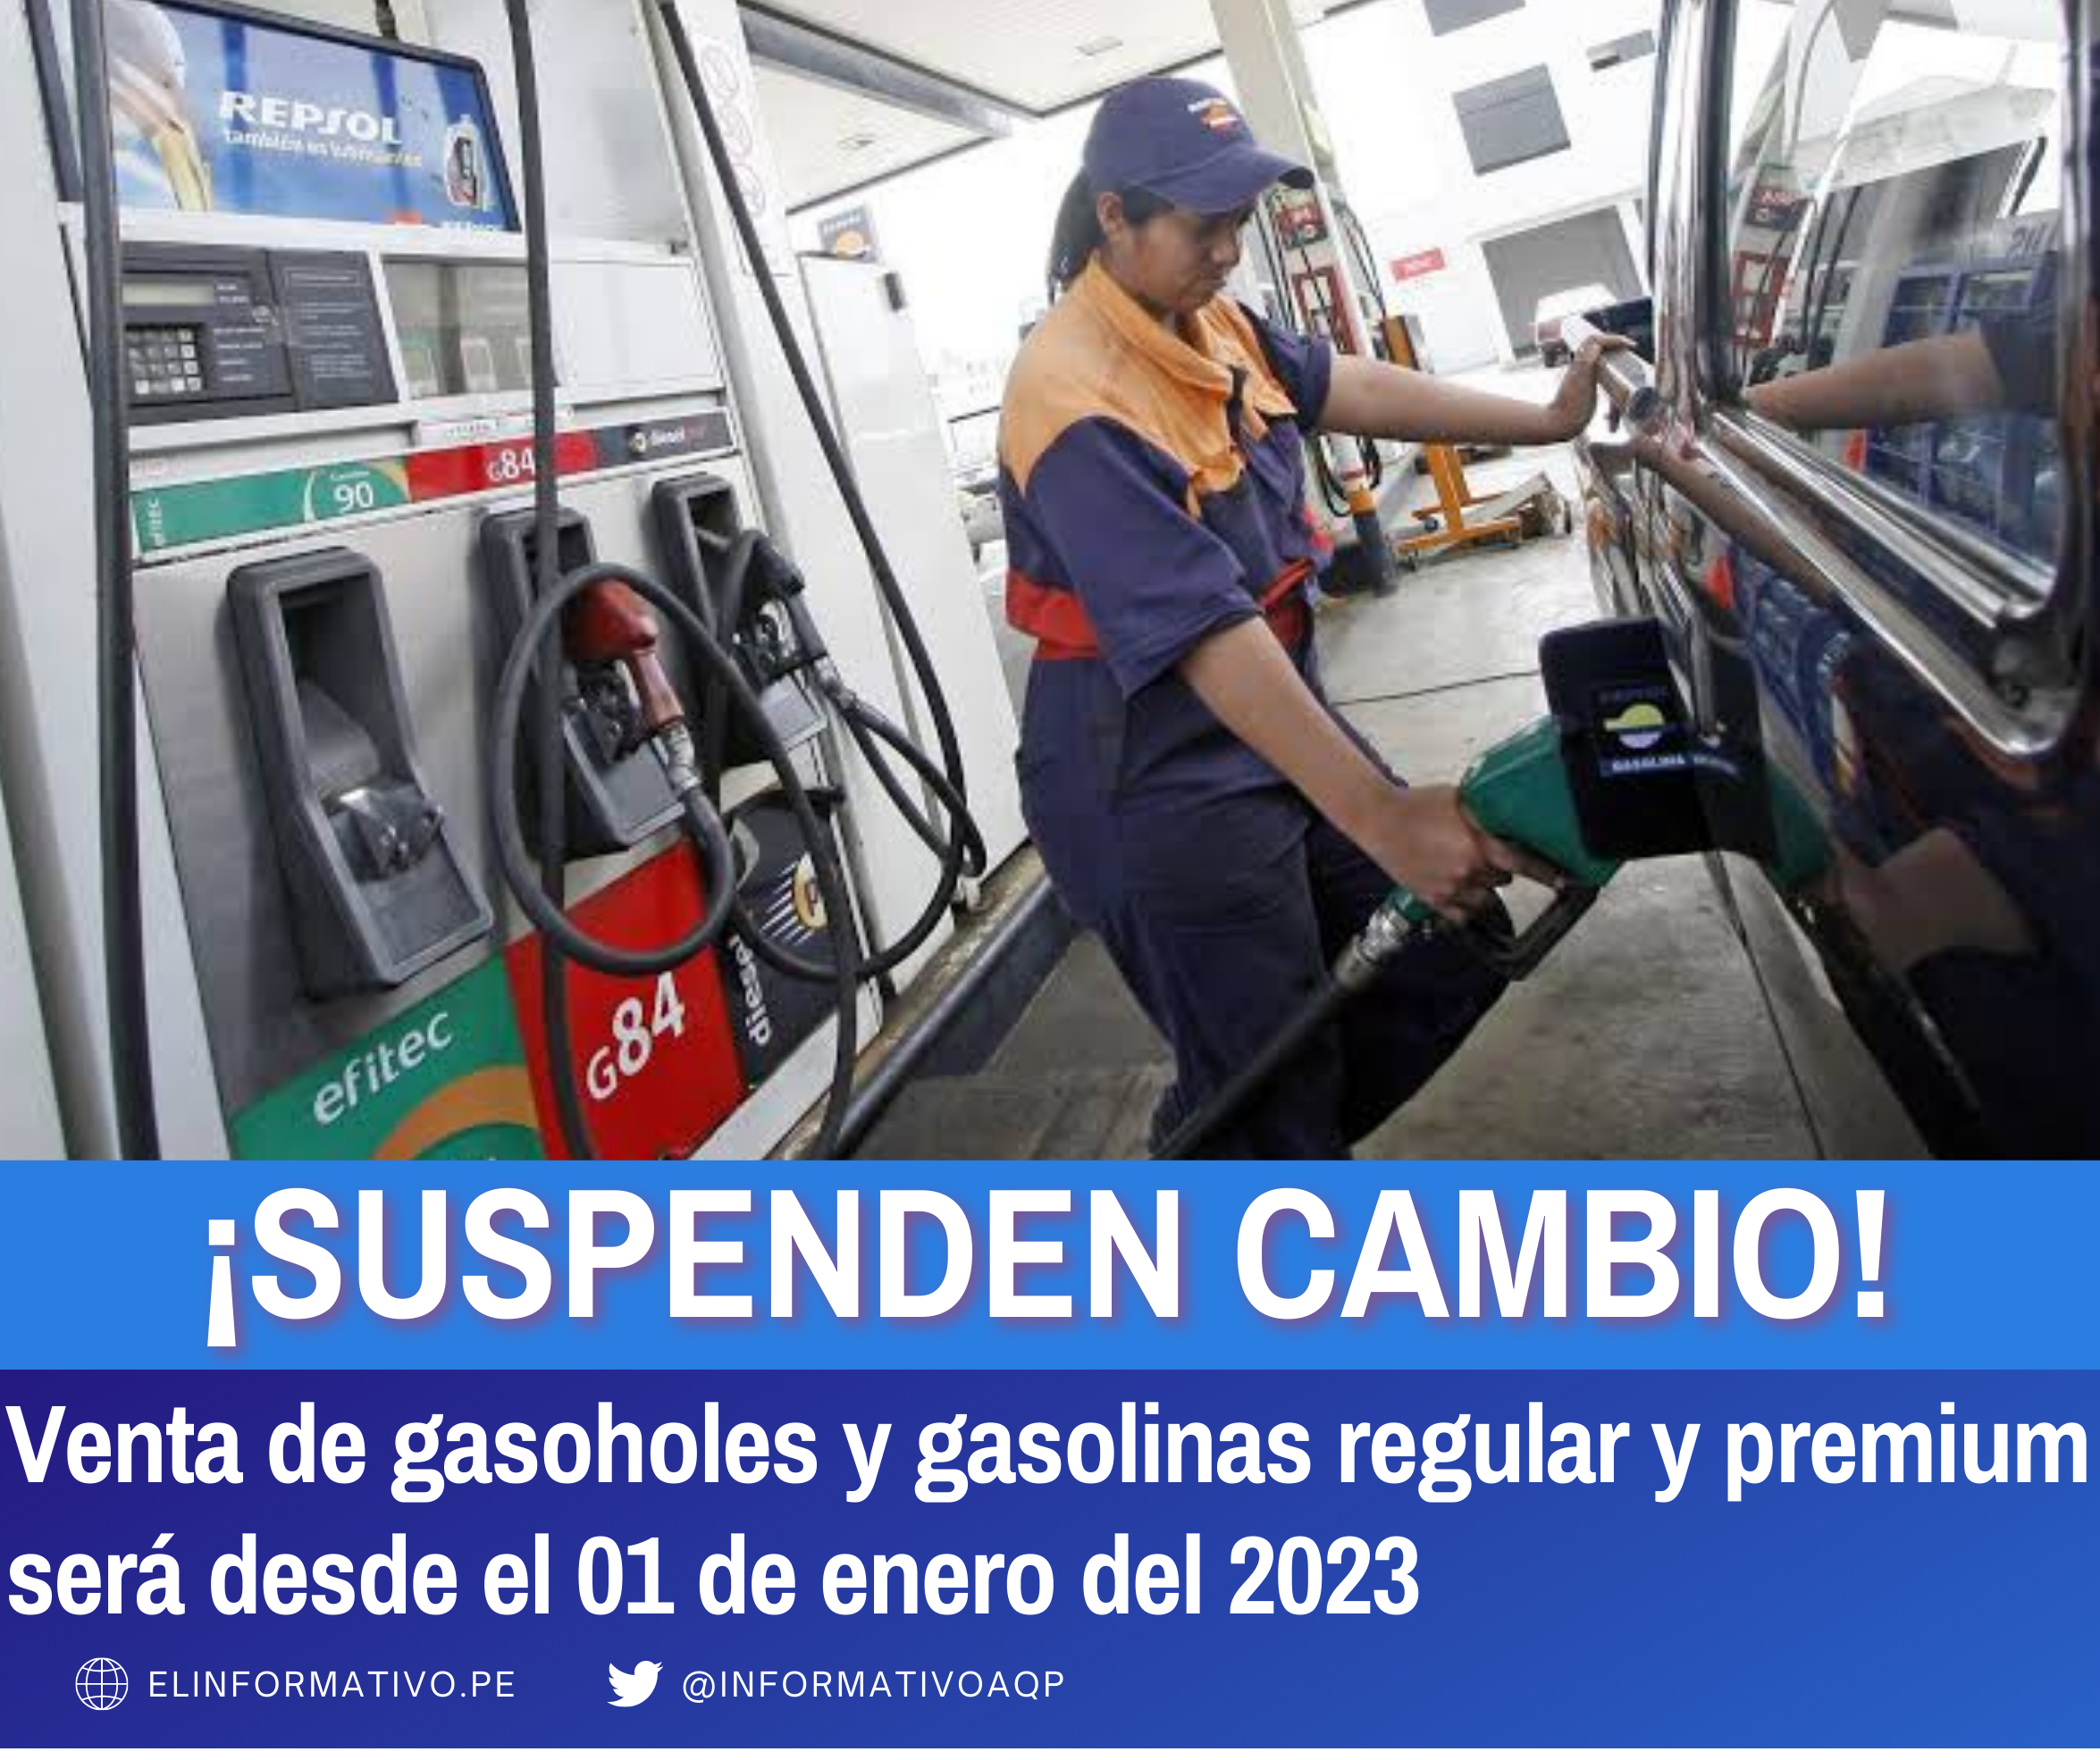 Gobierno posterga hasta el 1 de enero del 2023 el cambio en venta de gasolinas y gasoholes